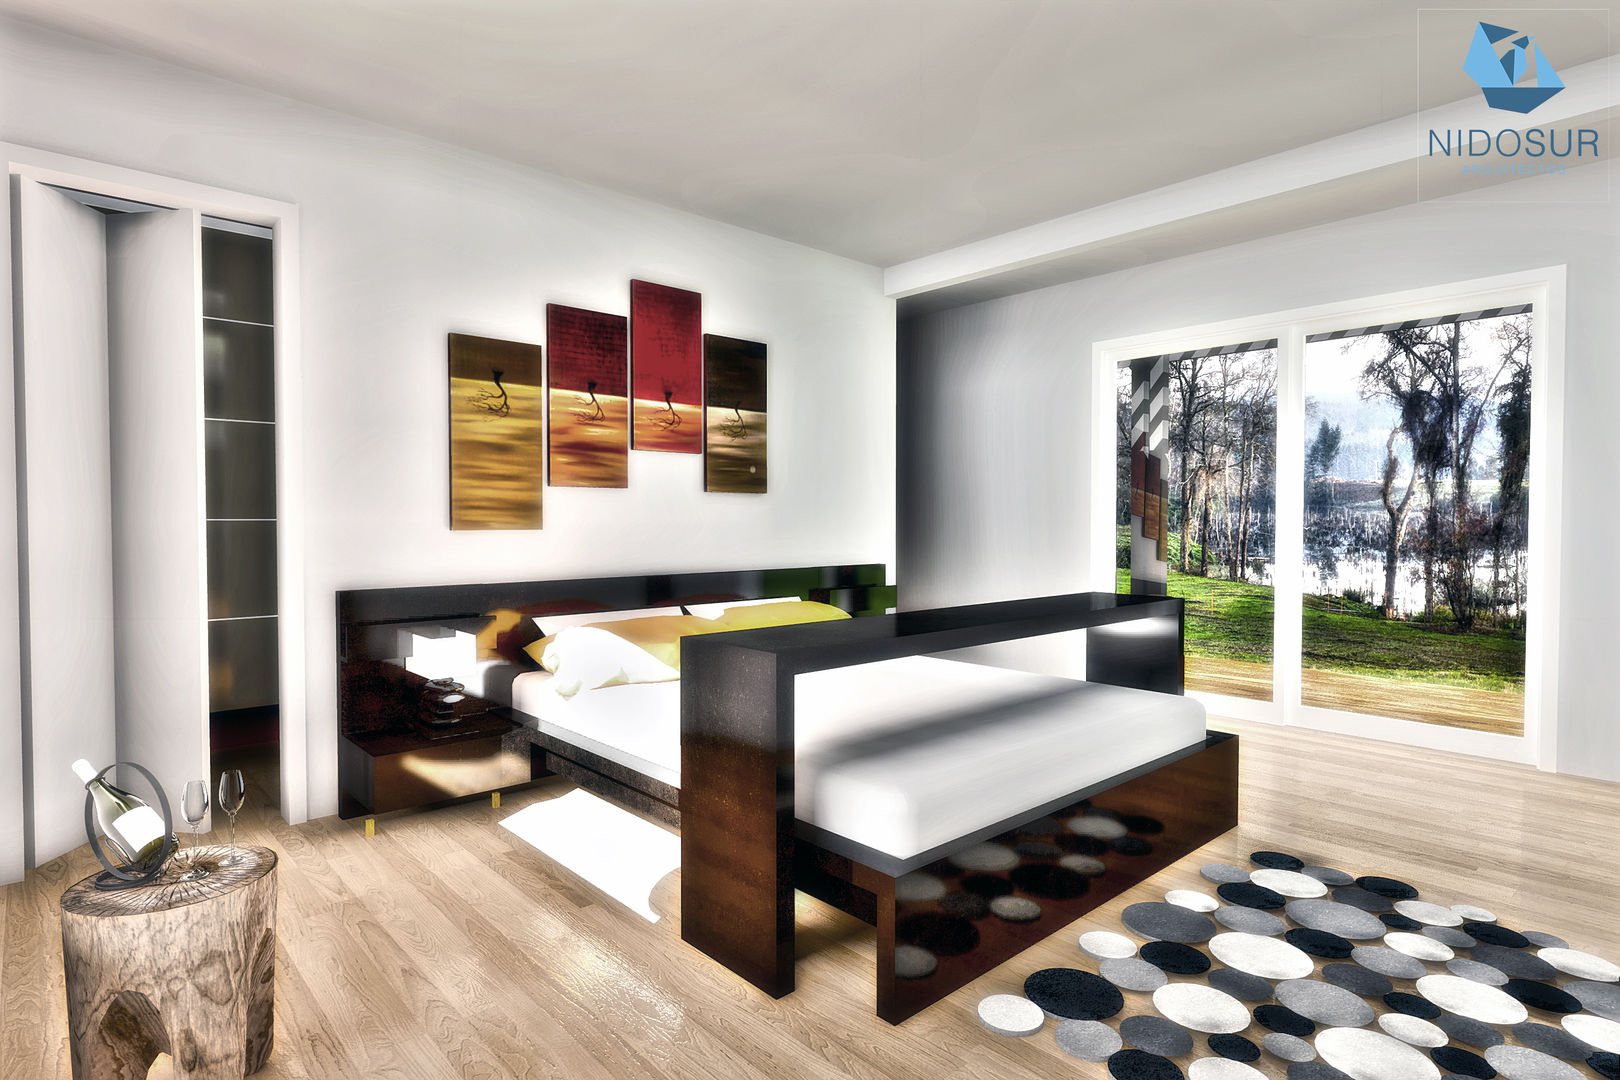 Dormitorio NidoSur Arquitectos - Valdivia Habitaciones modernas